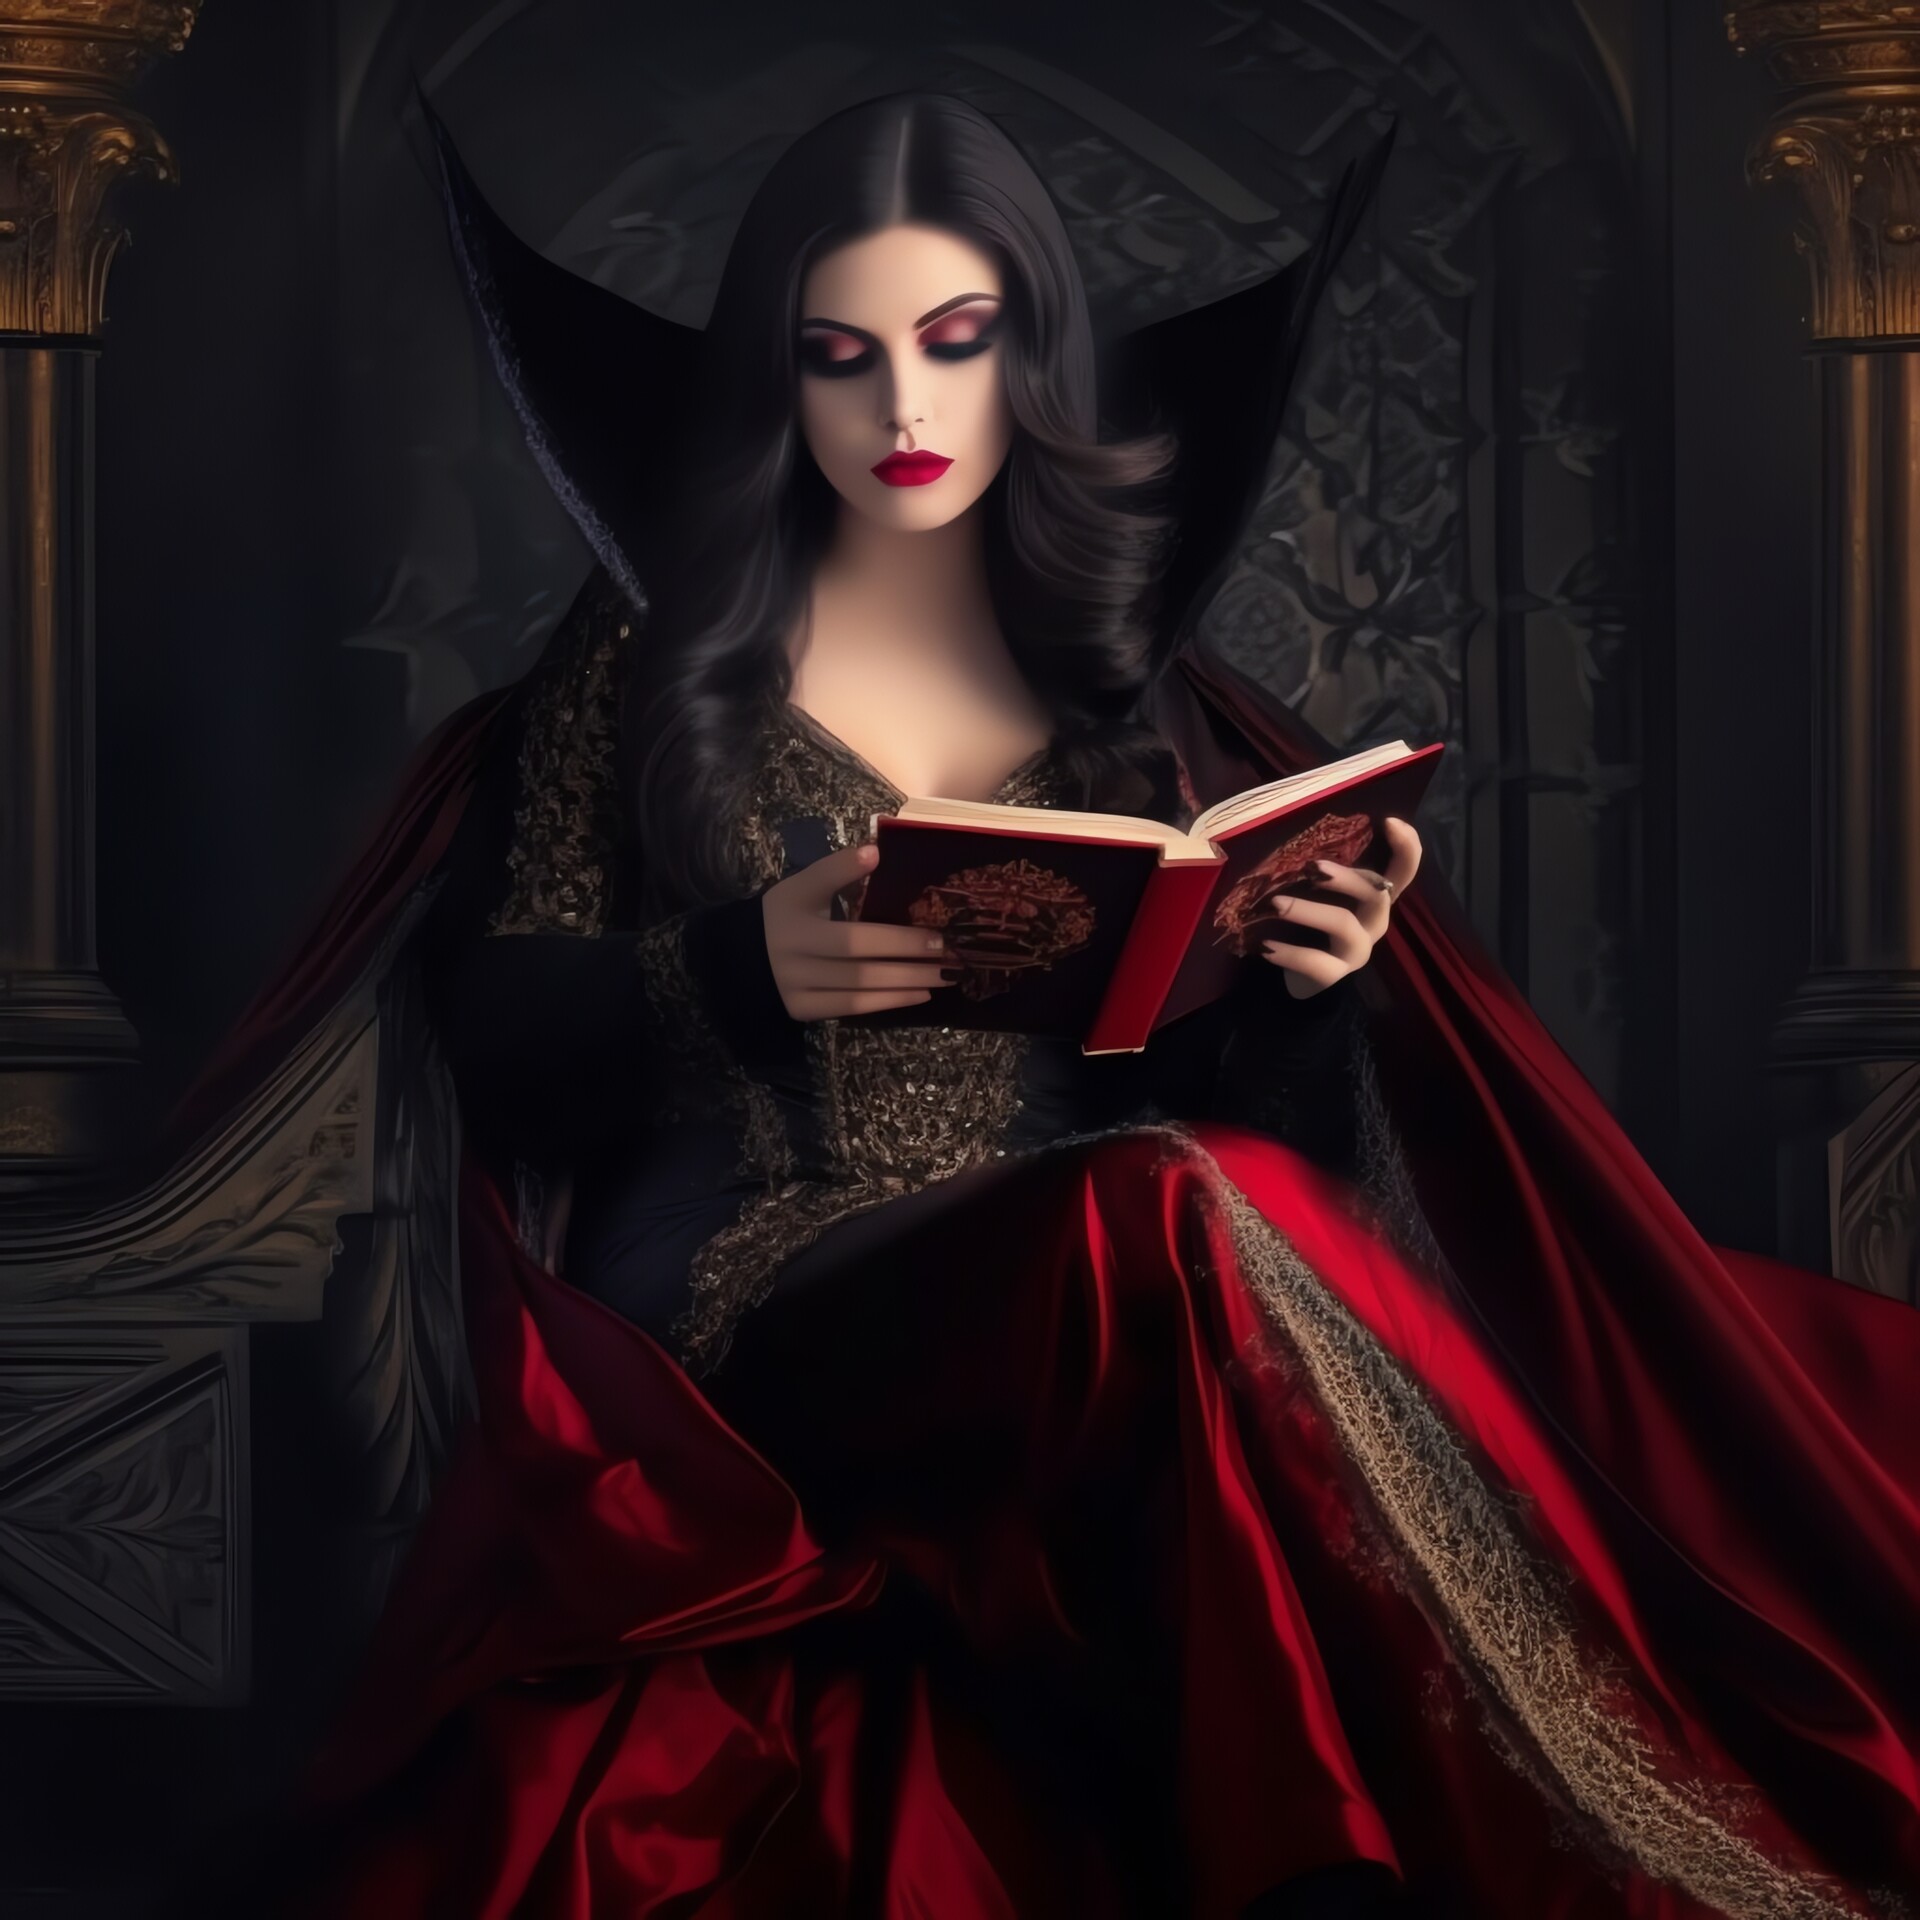 ArtStation - Vampire Queen - III